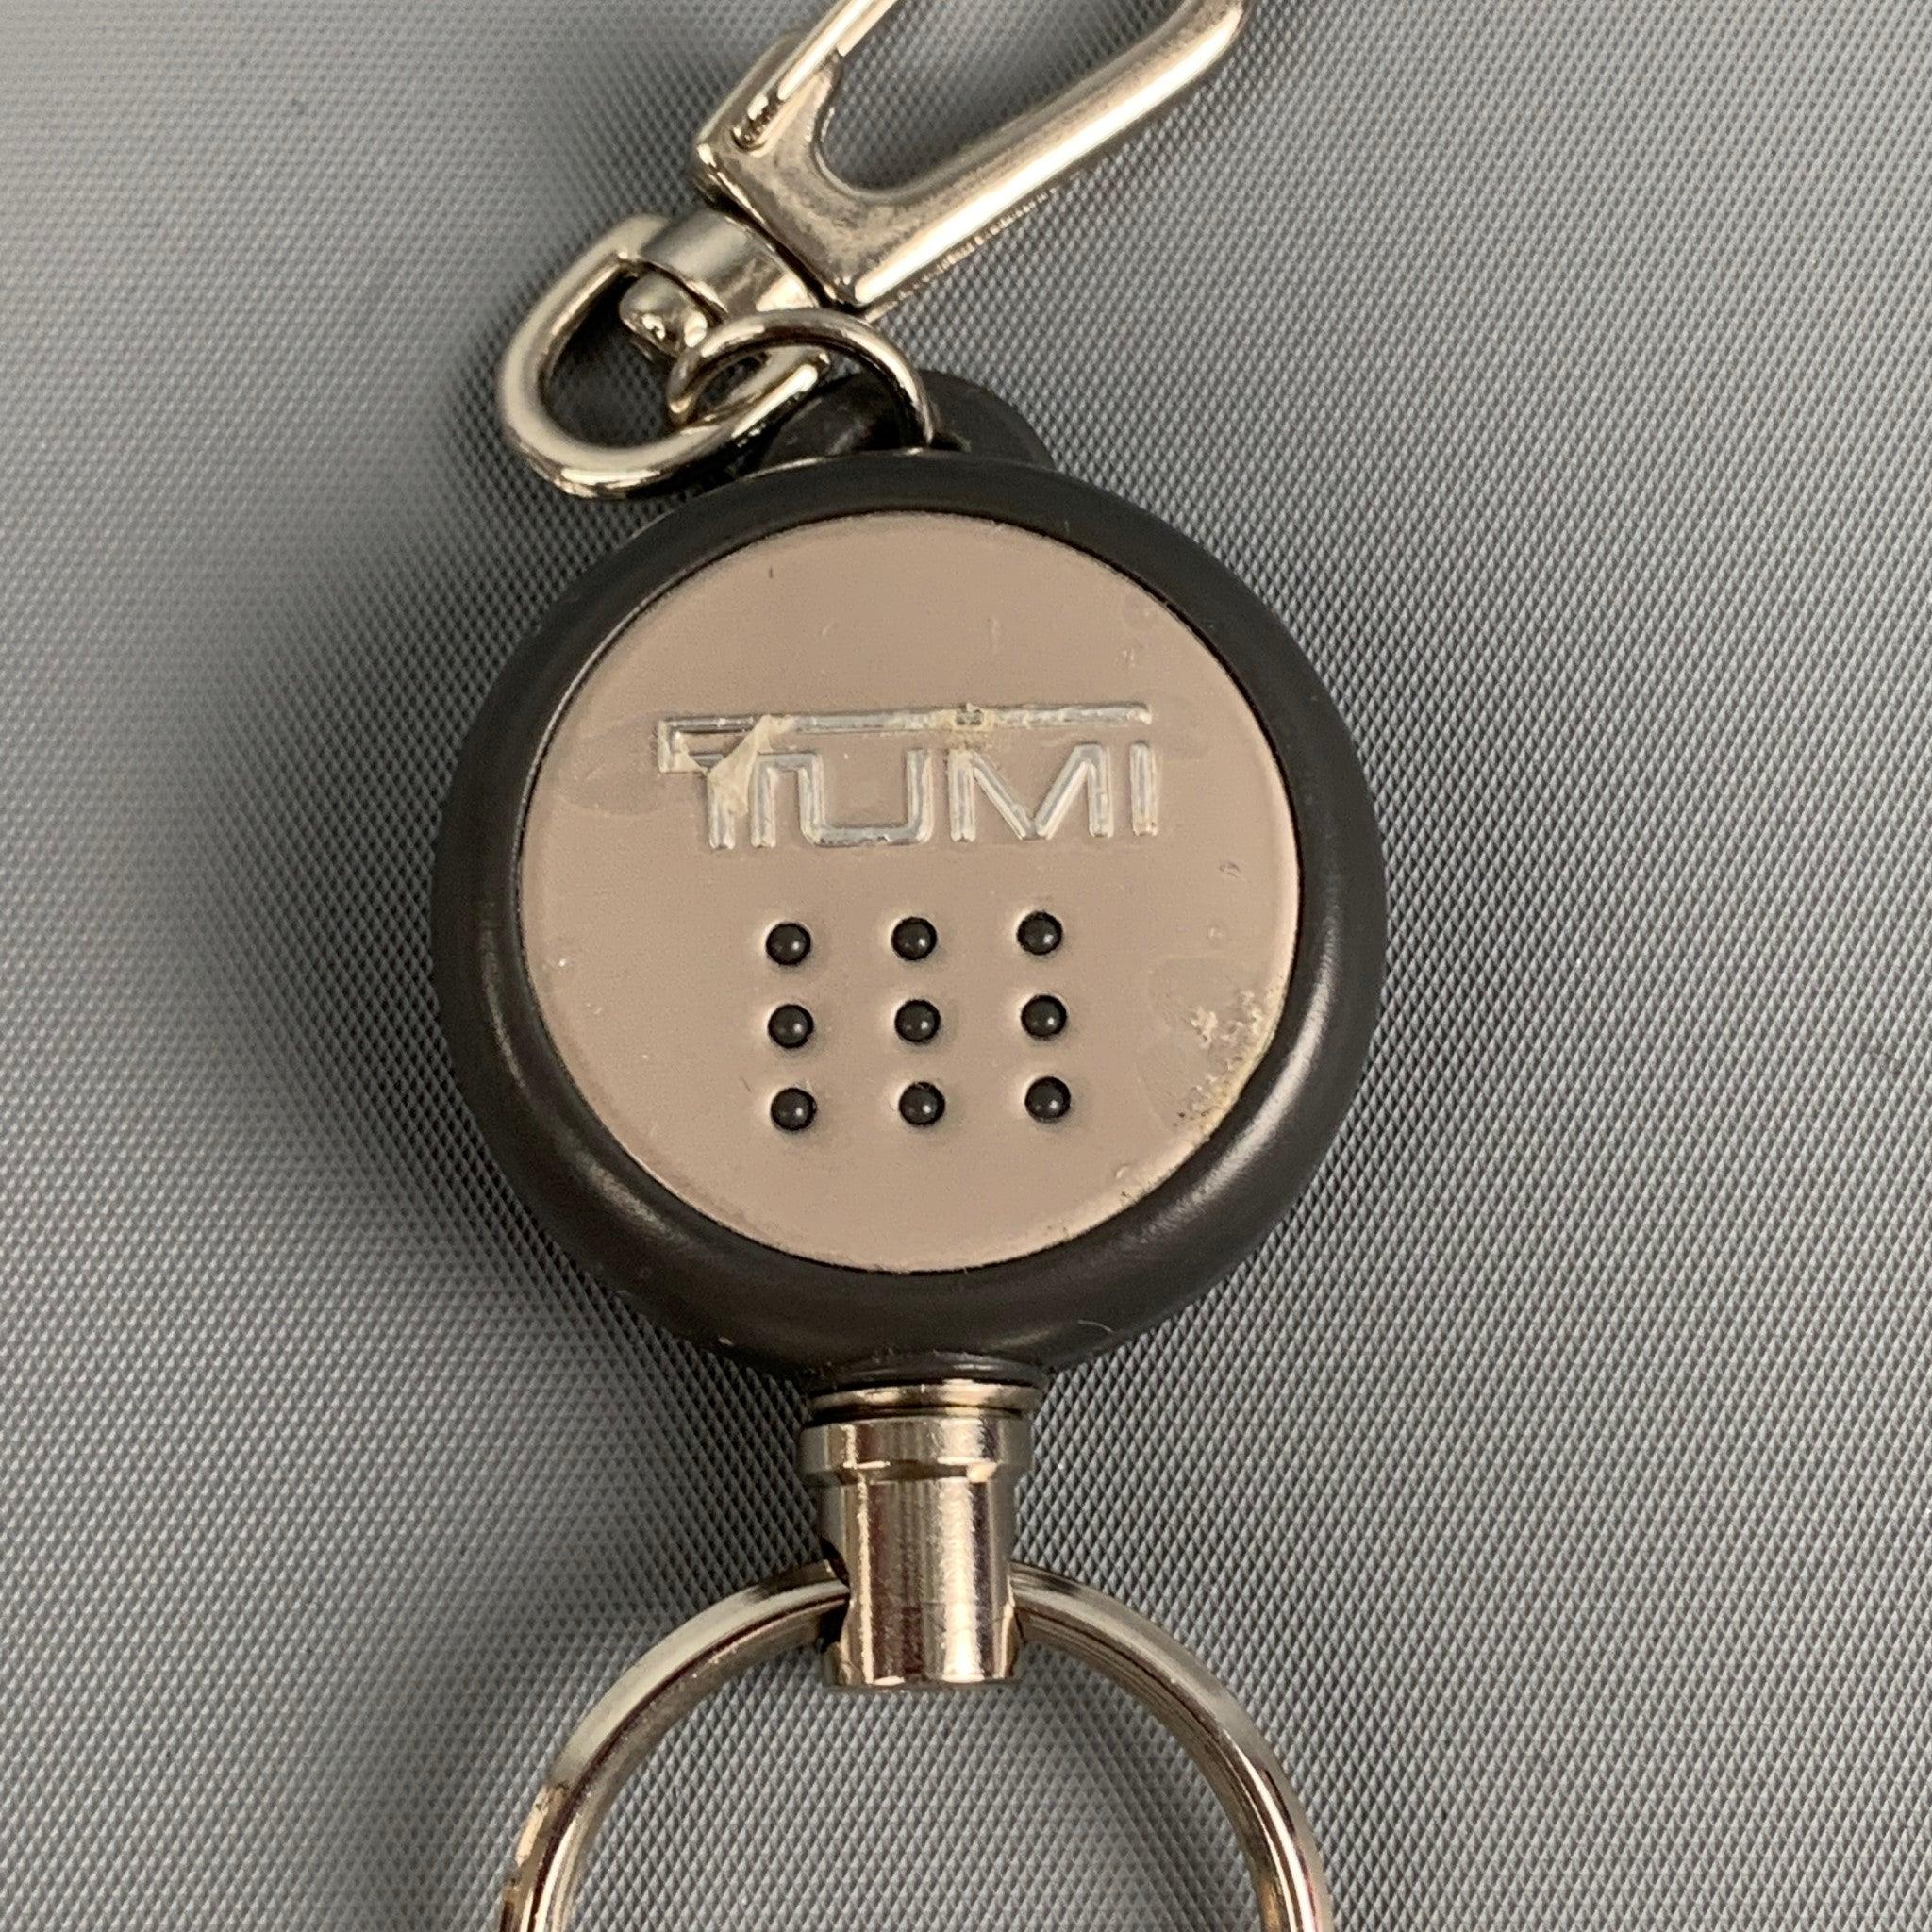 Der TUMI-Schlüsselanhänger ist aus silbernem Metall gefertigt und mit einem Verschluss versehen.
Guter Pre-Owned Zustand. Leichte Abnutzung. Wie es ist.  

Abmessungen: 
  Breite: 1.25 Zoll  

  
  
 
Referenz: 118838
Kategorie: Taschen &